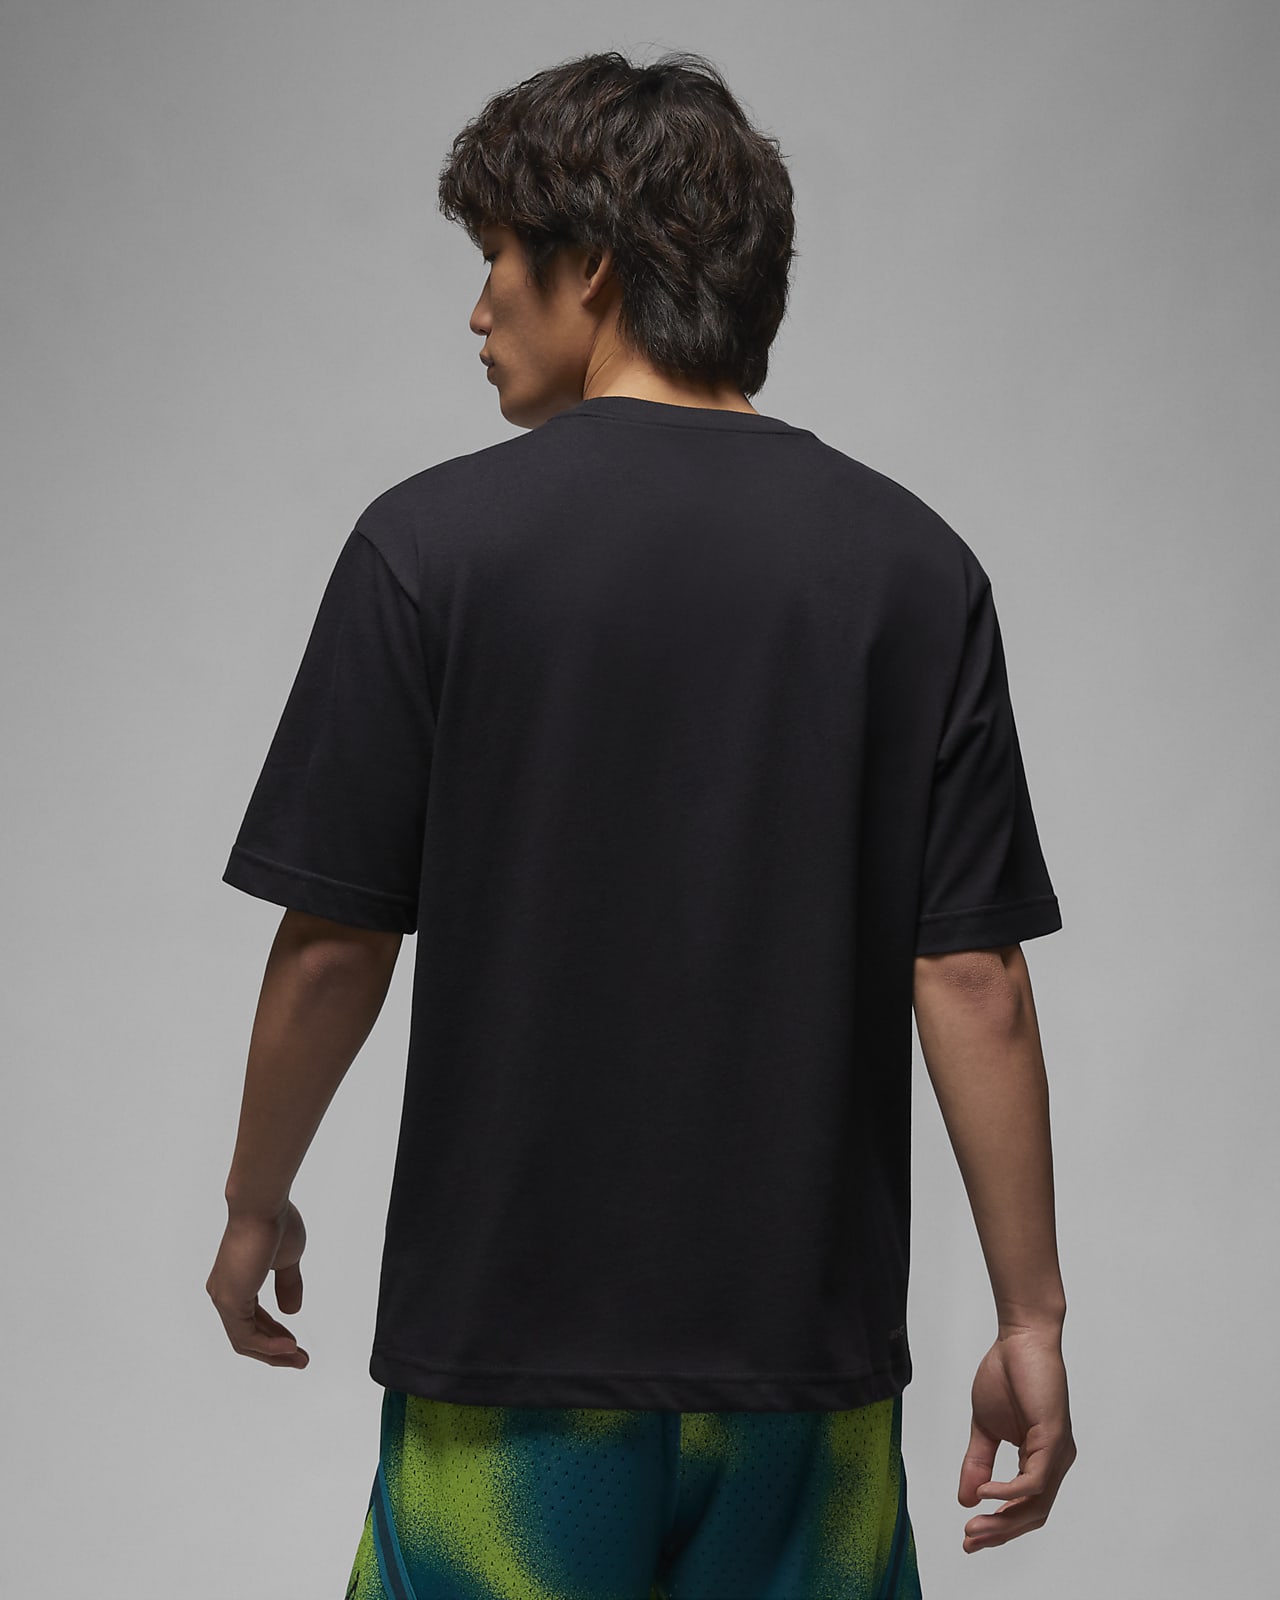 NIKE公式】ジョーダン スポーツ 85 メンズ グラフィック Tシャツ ...